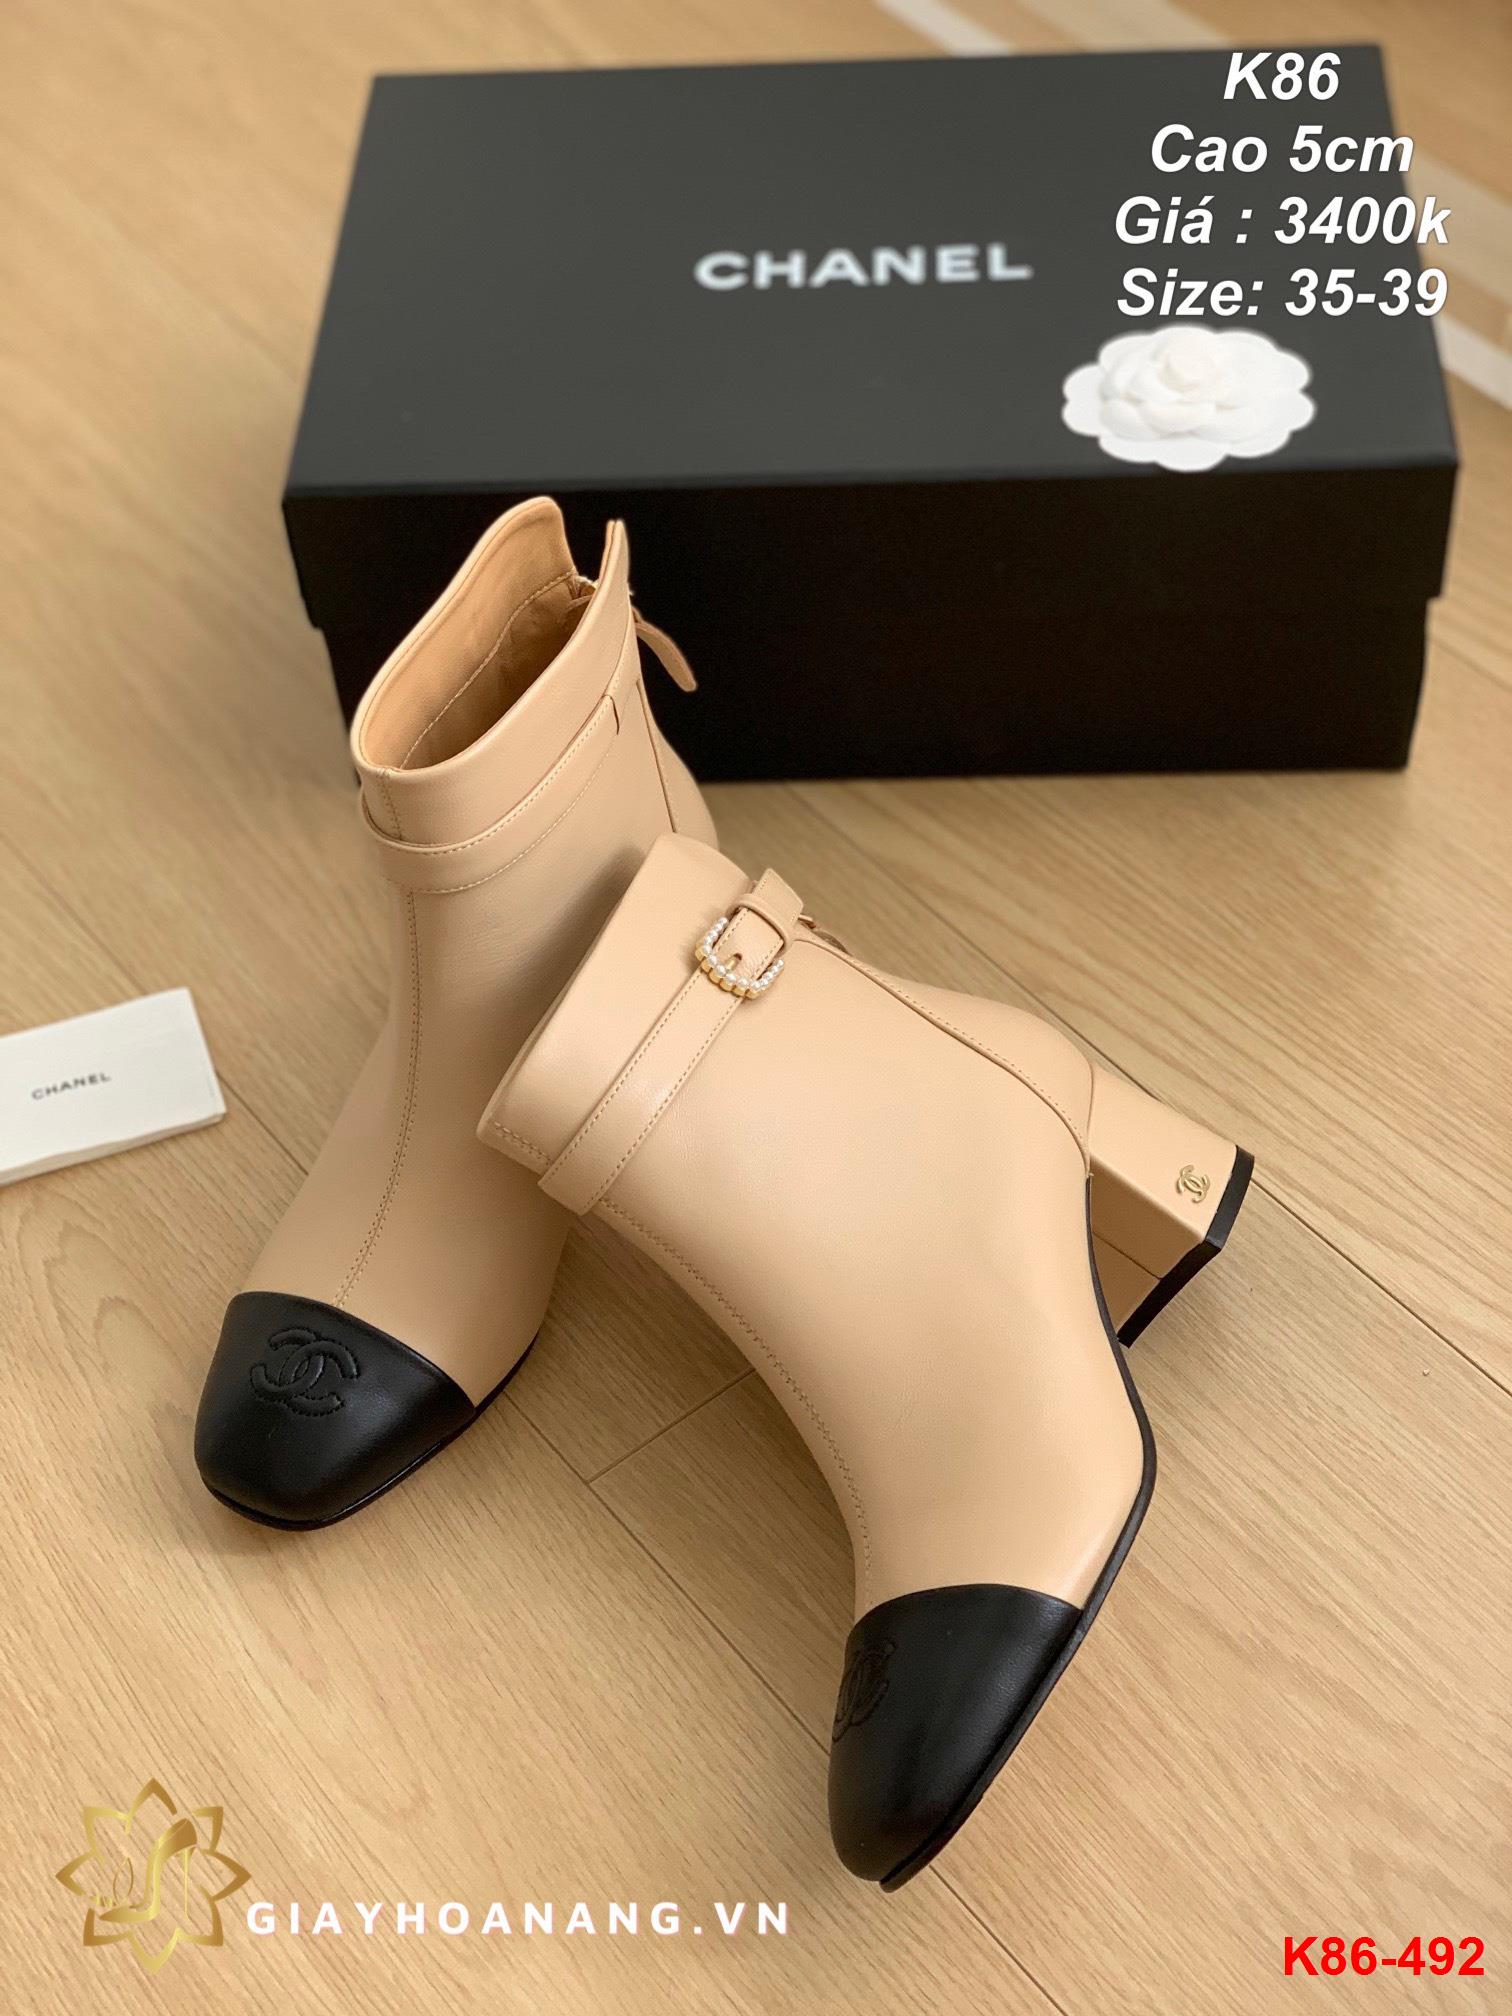 K86-492 Chanel bốt cao 5cm siêu cấp